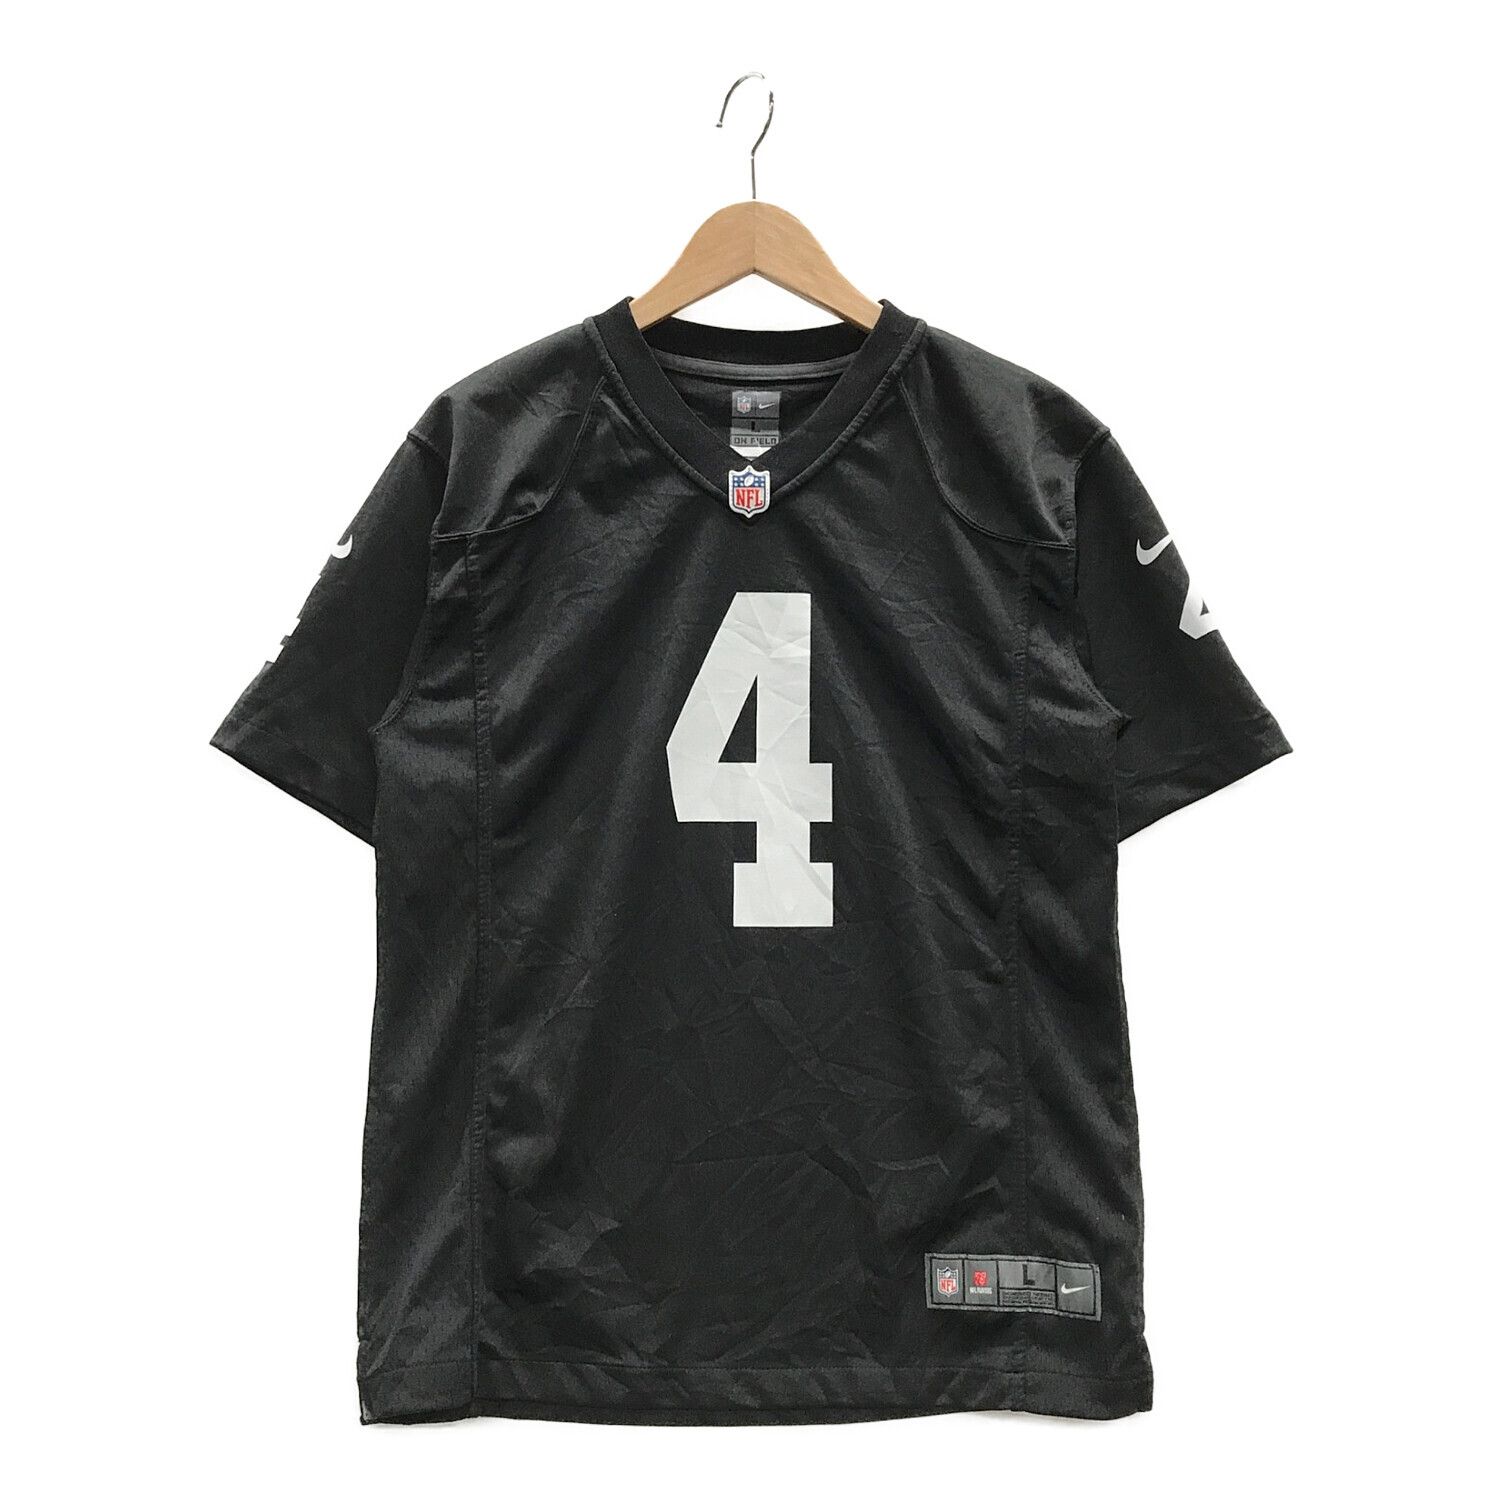 NIKE (ナイキ) NFL Oakland Raiders ゲームシャツ メンズ SIZE L 